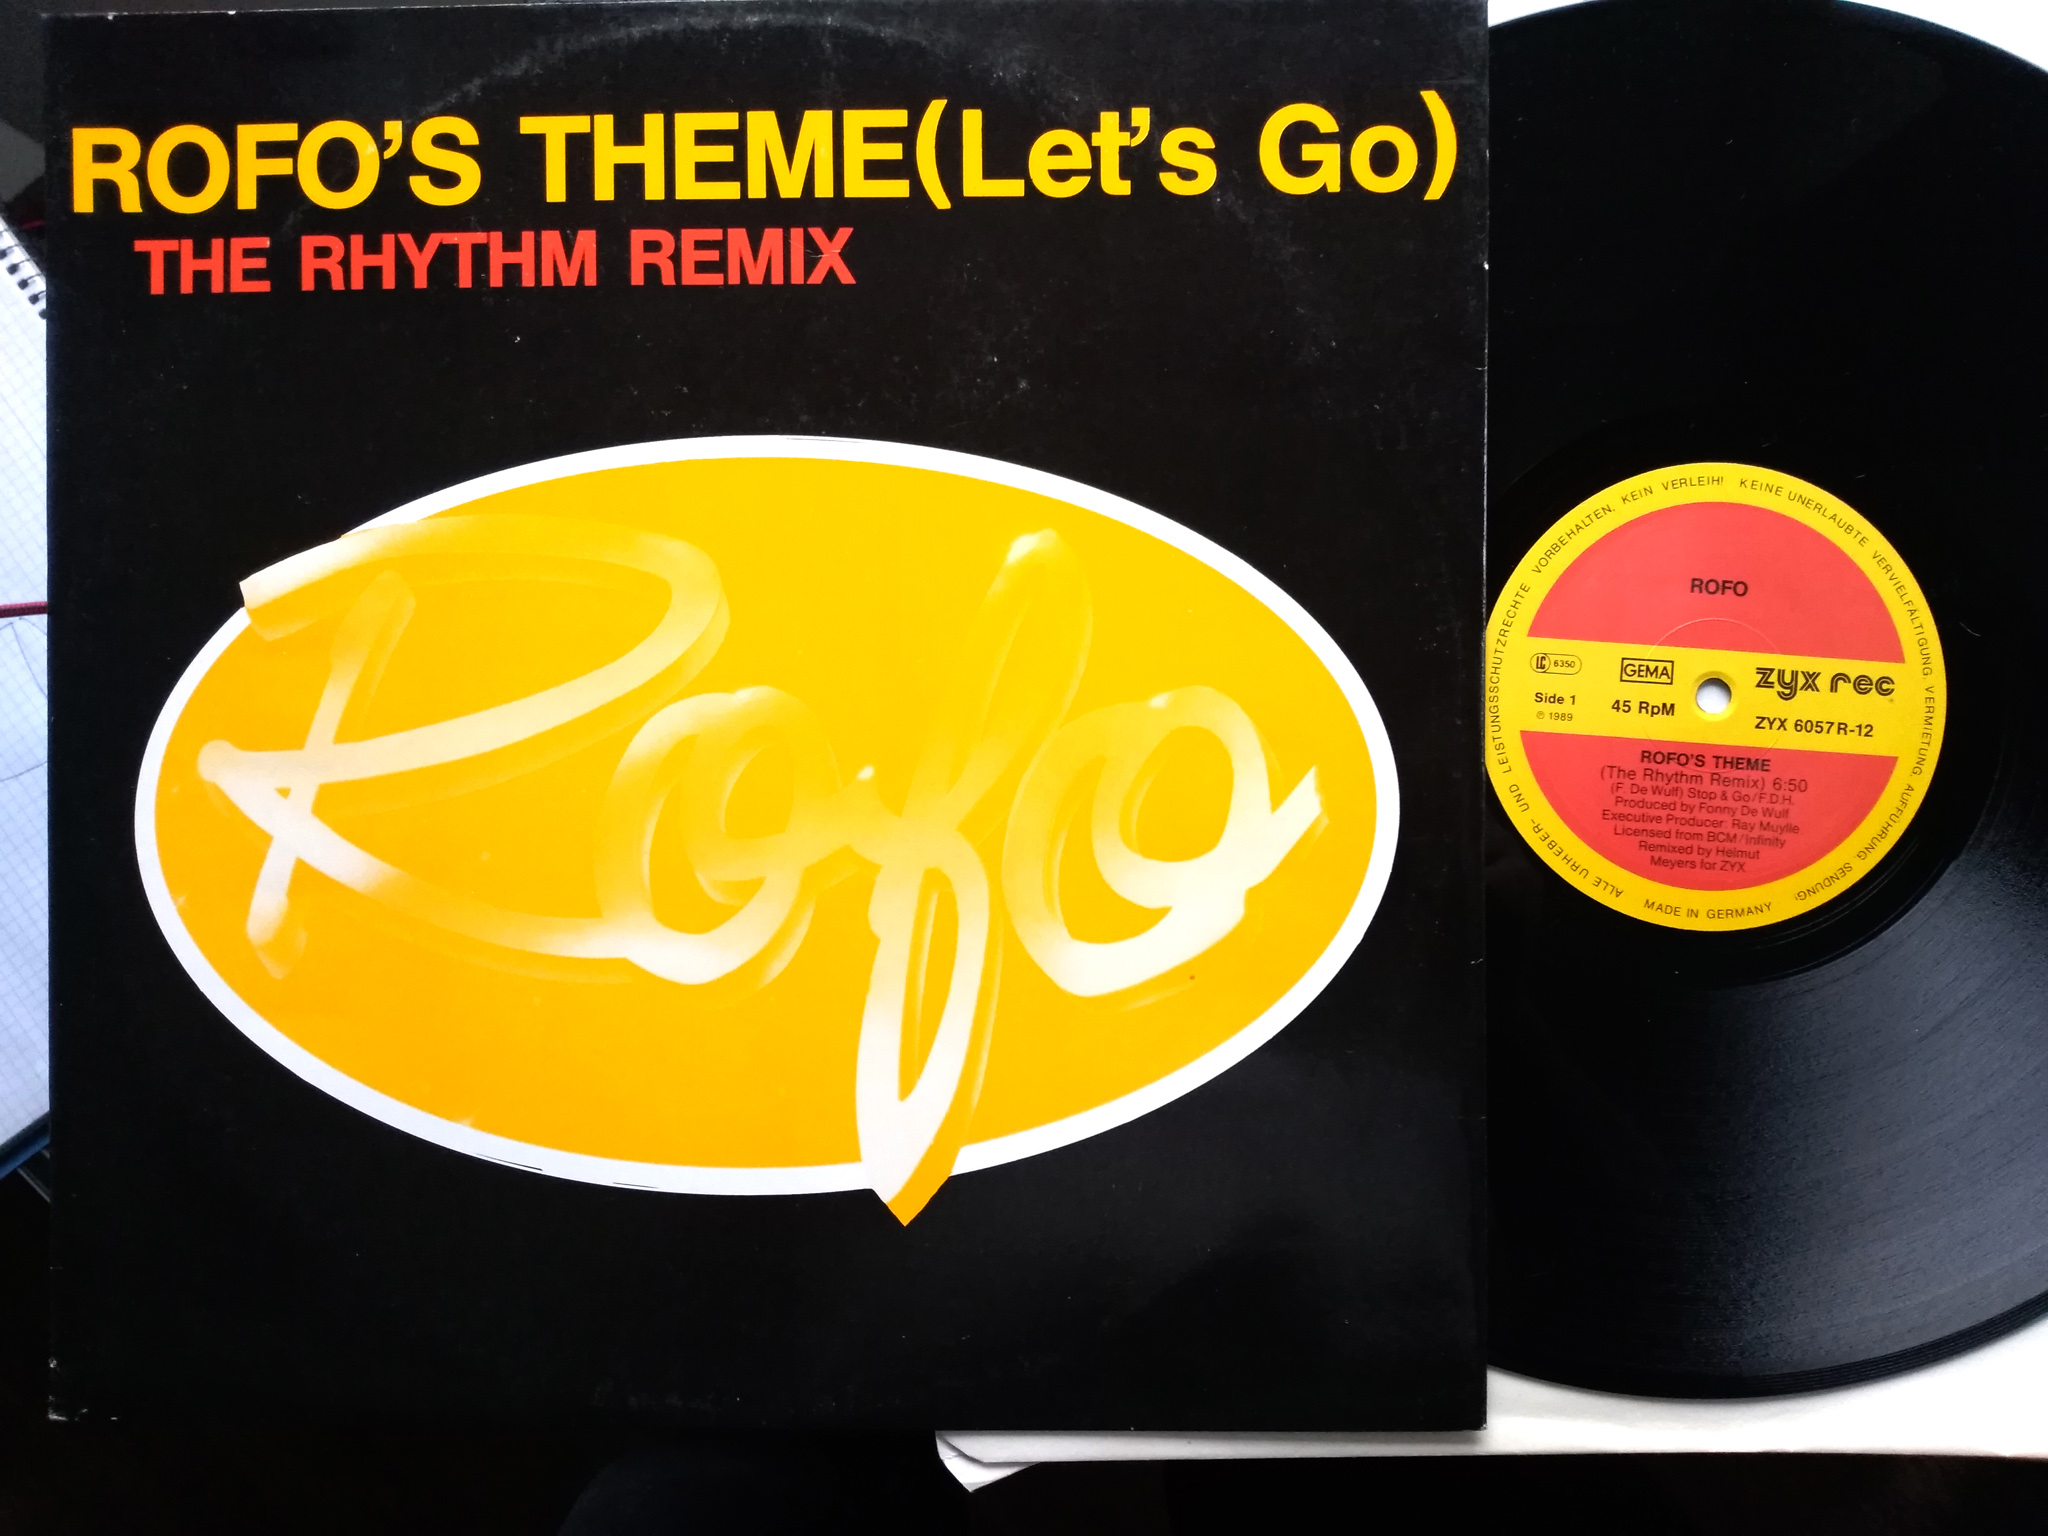 Rofo - Roro's Theme (Let's Go)